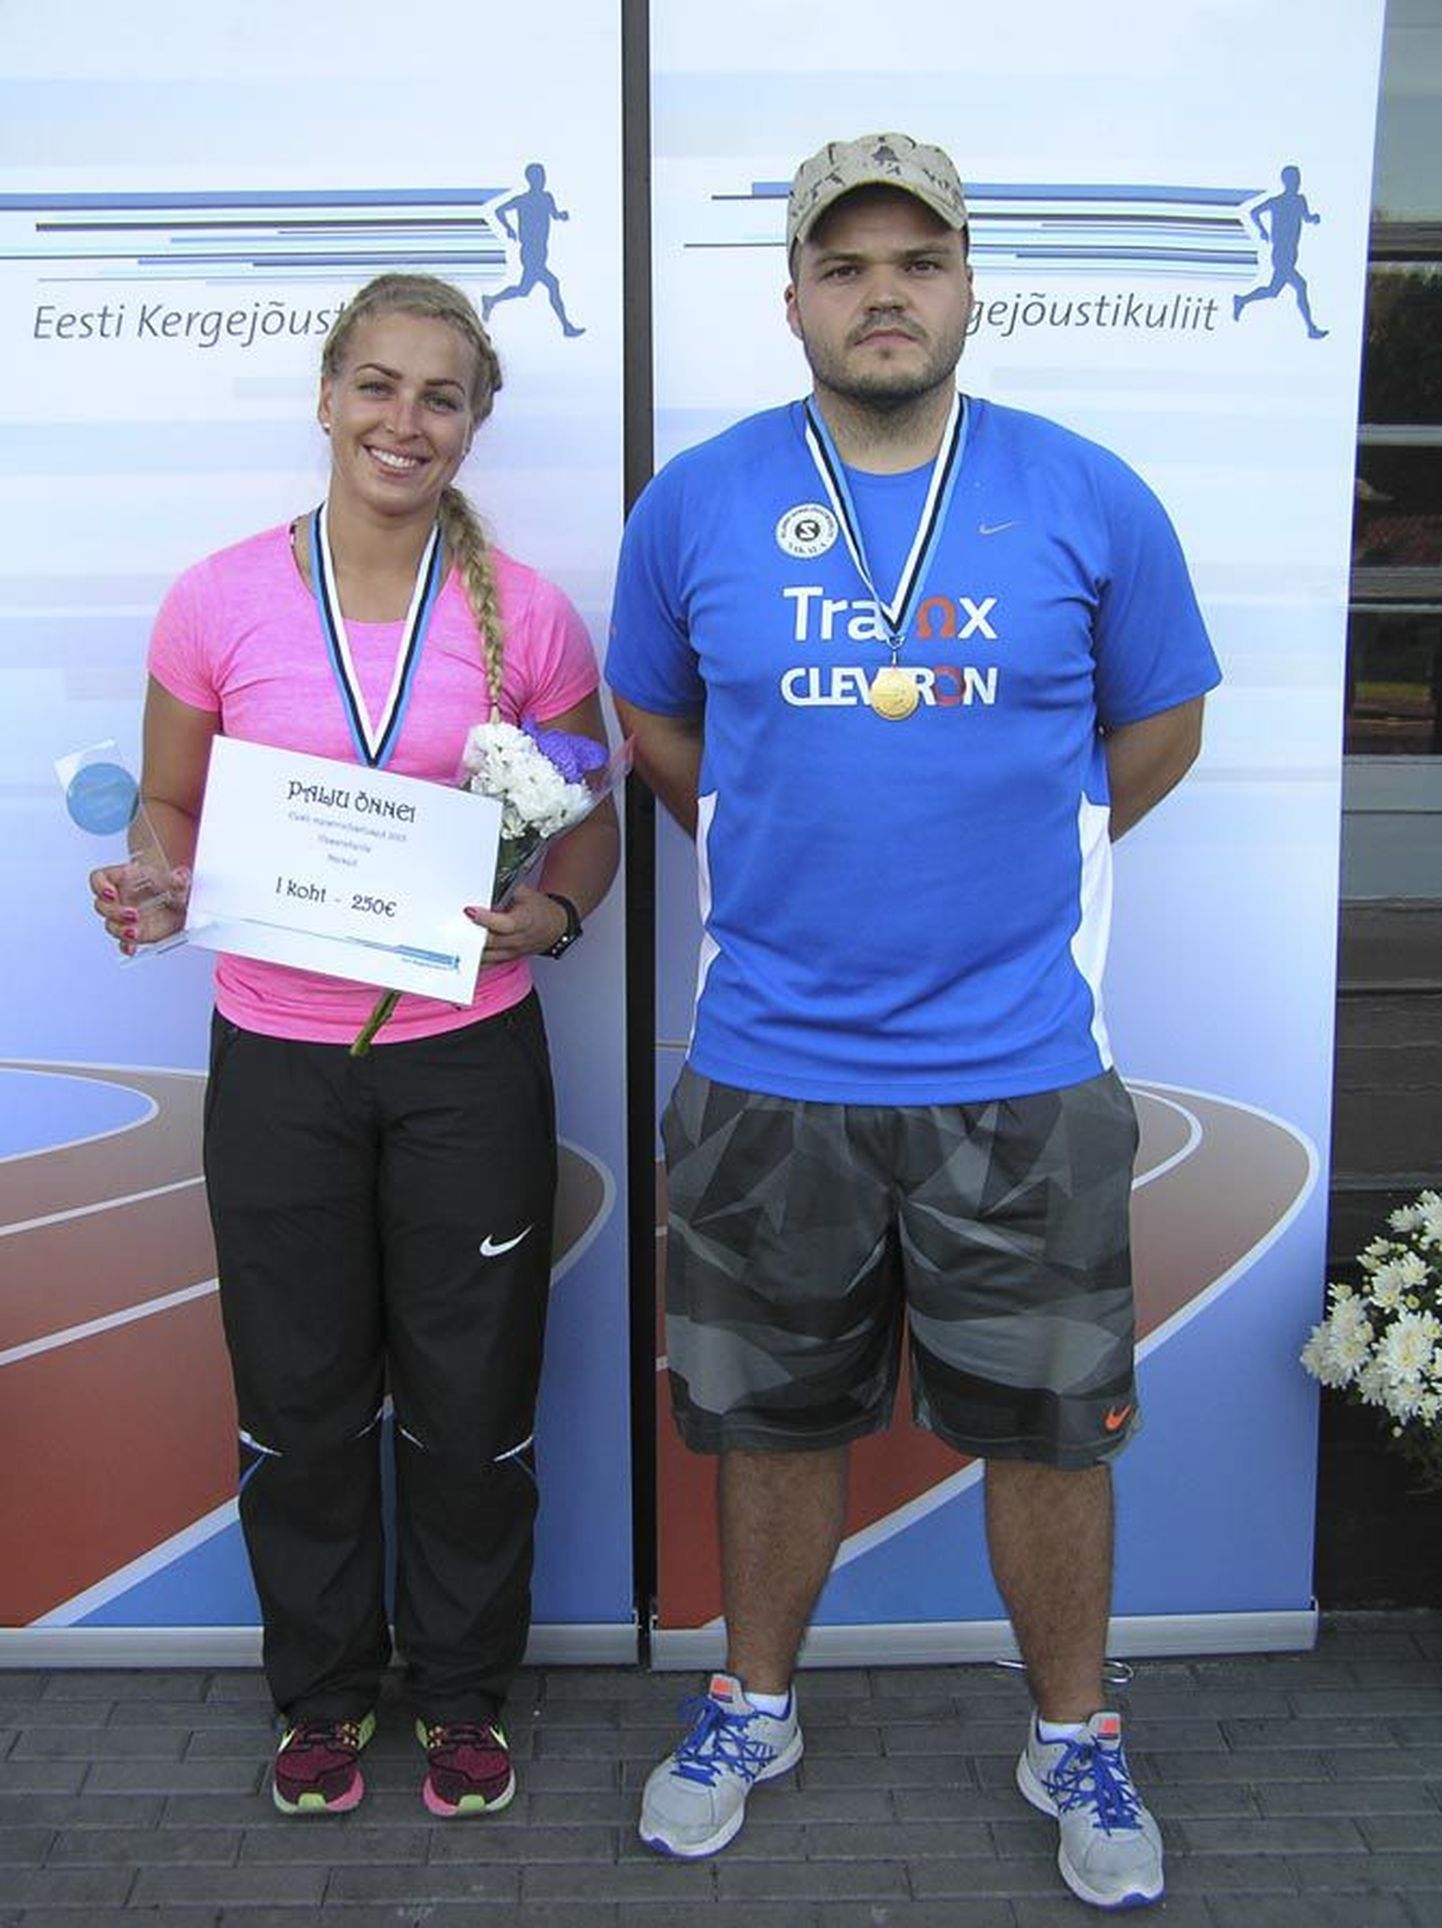 Viljandi Sakala seltsi vasaraheitjad Kati Ojaloo ja Martin Lehemets teenisid Eesti kergejõustiku meistrivõistlustel kuldmedali. Mõlemale oli see neljas meistritiitel.